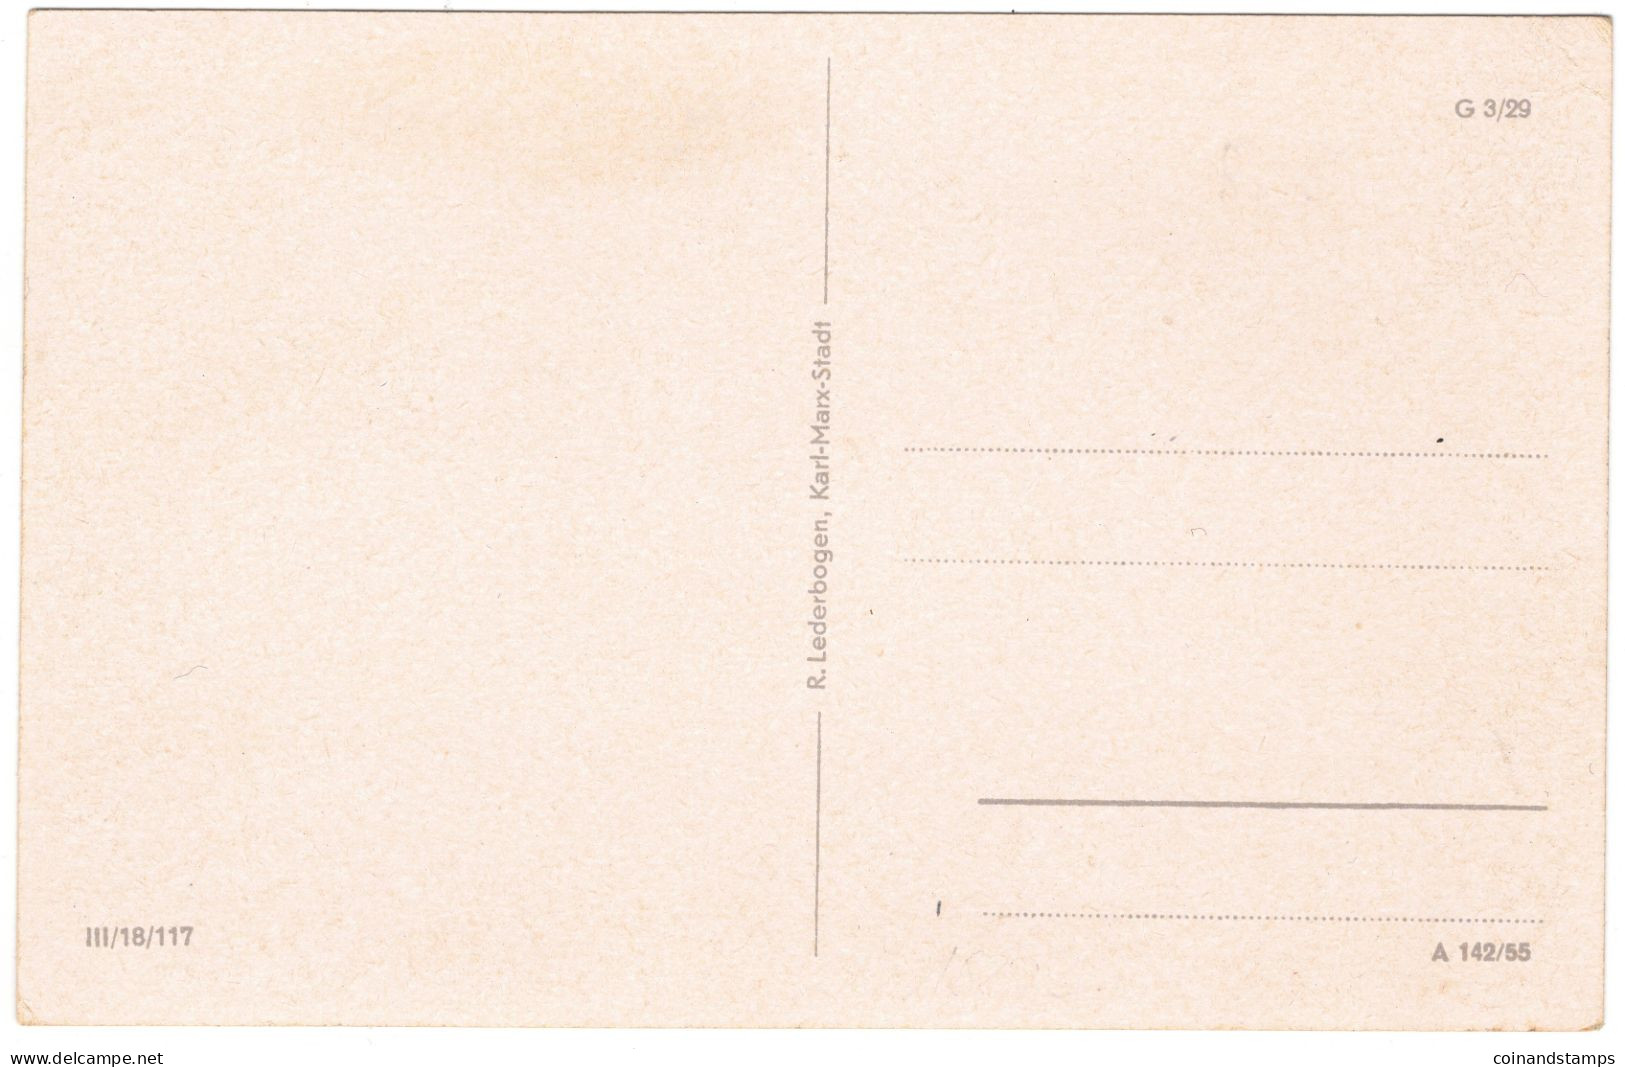 Postkarte Güstrow -Institut Für Lehrerweiterldung Mit FDJ Schild, S/w, 1955, RARE,I-II - Guestrow